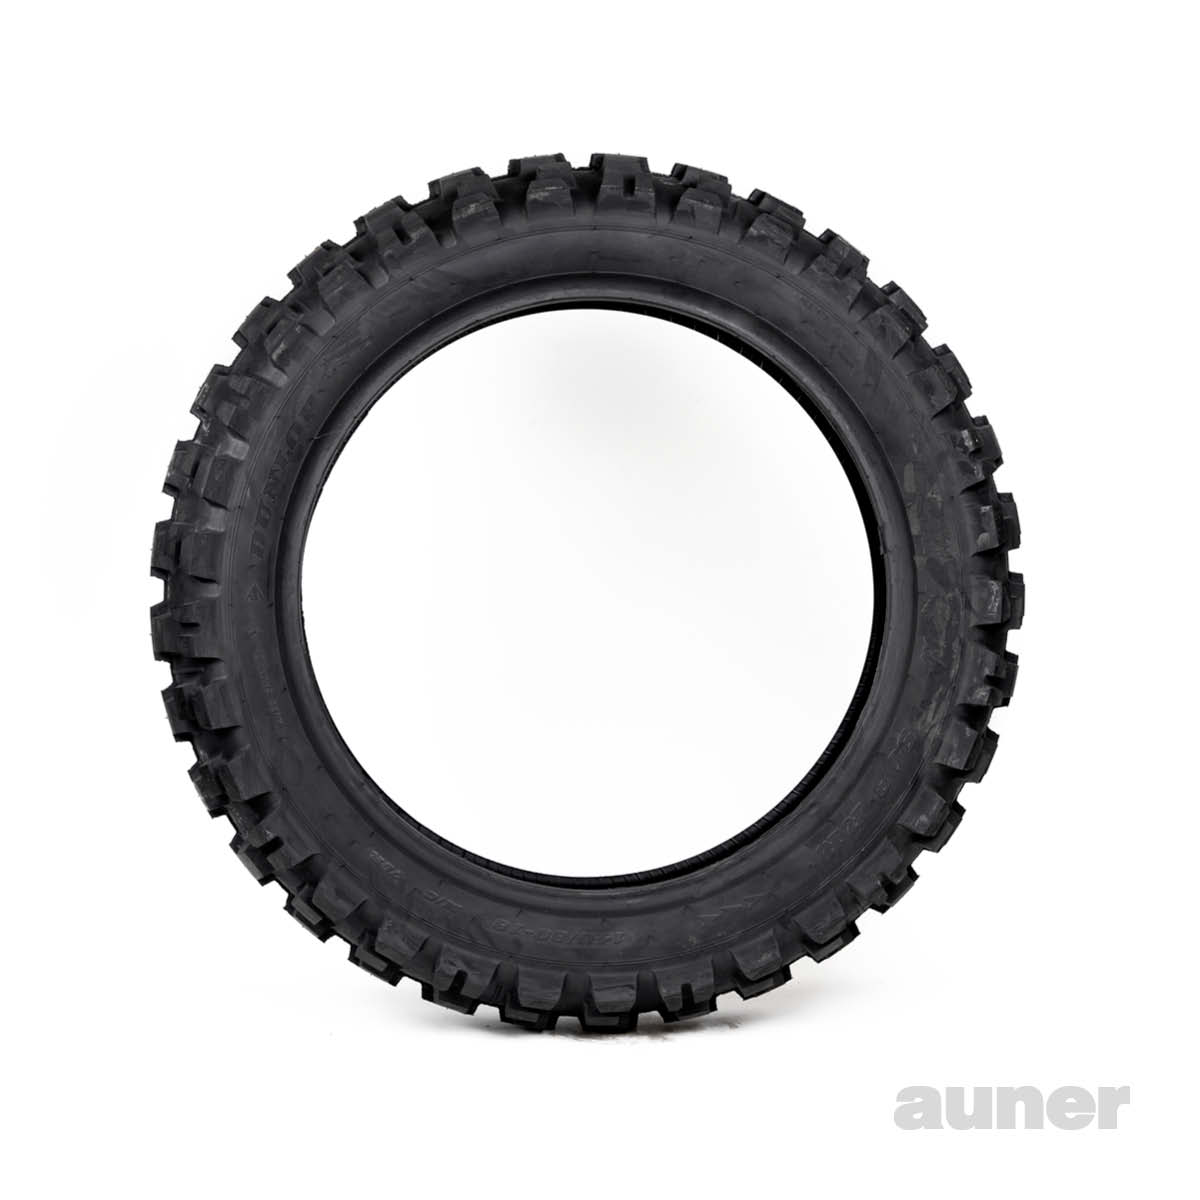 Dunlop Reifen online Auner D908 - RR kaufen bei